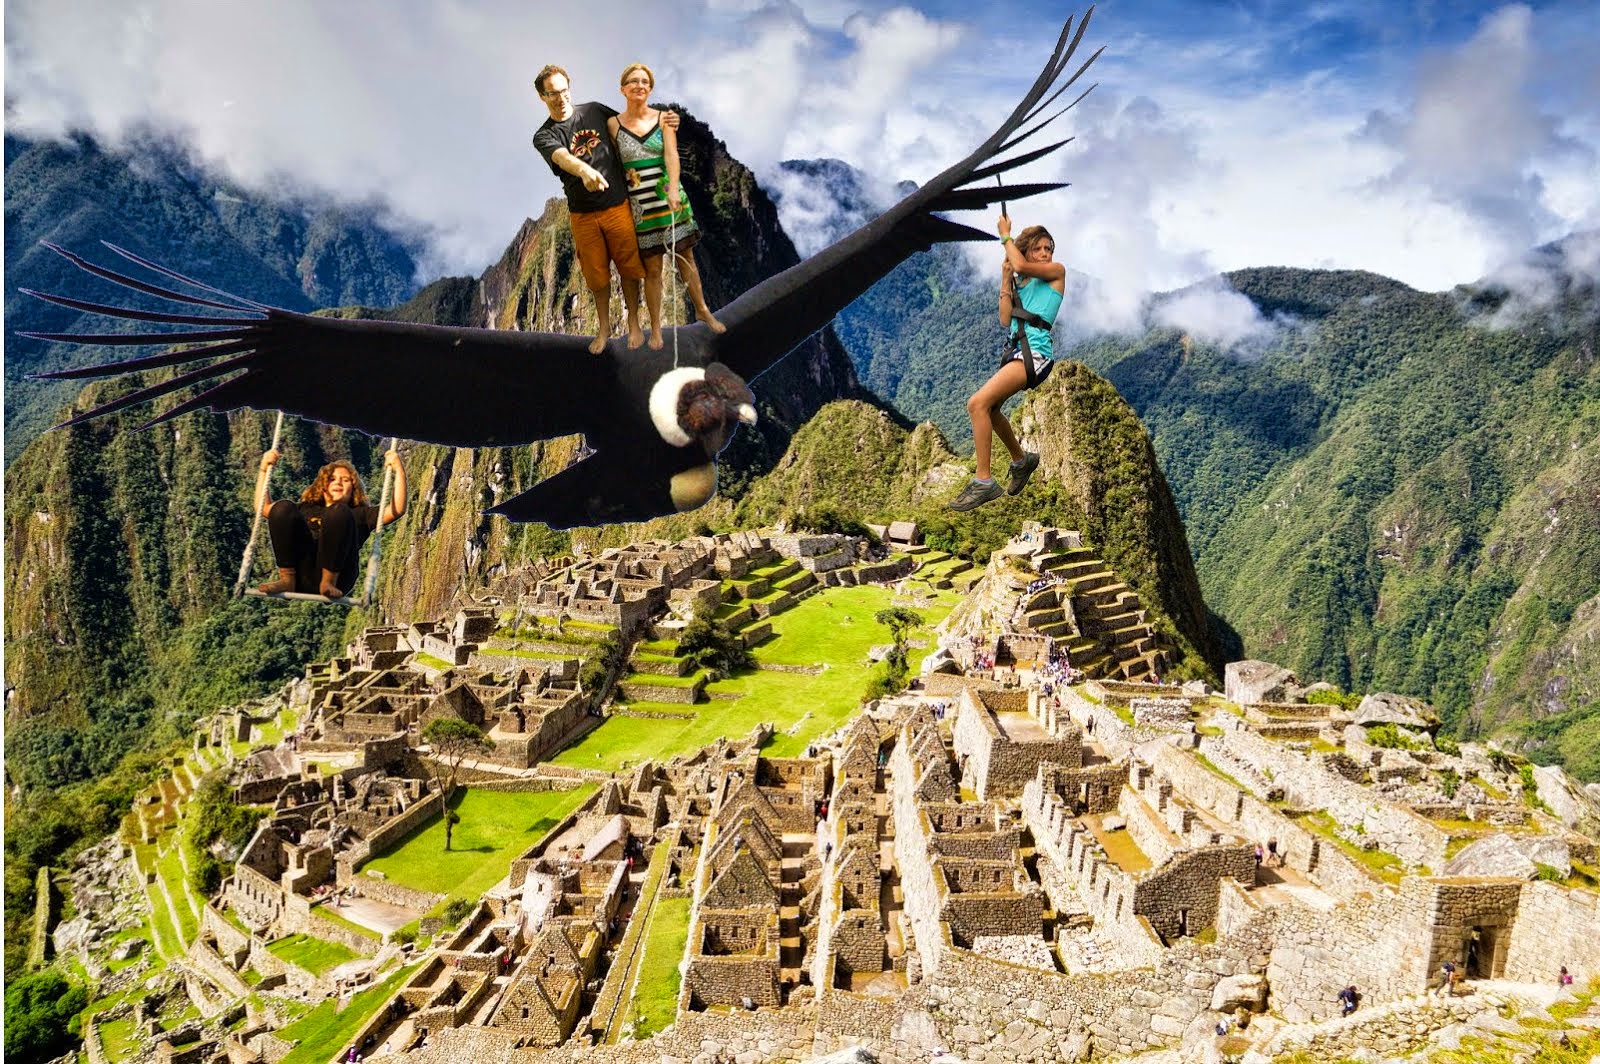 Equateur, Pérou, Bolivie et chili sur les ailes du condor pendant 5 mois